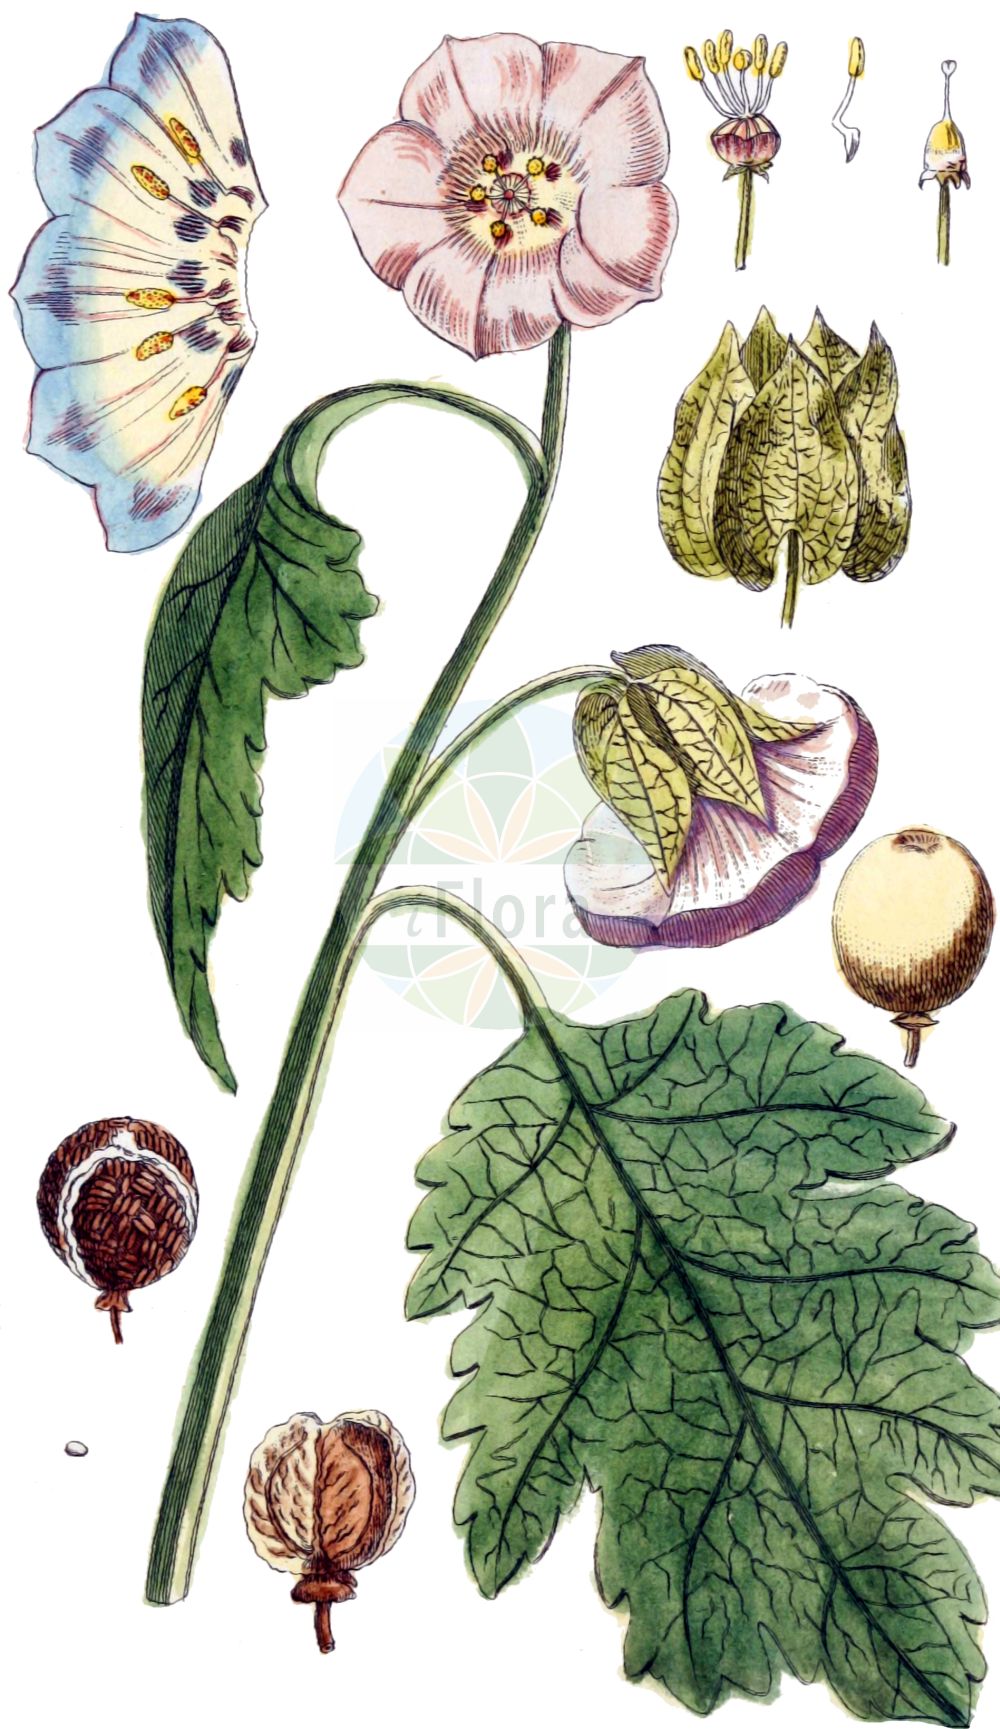 Historische Abbildung von Nicandra physalodes (Giftbeere - Apple-of-Peru). Das Bild zeigt Blatt, Bluete, Frucht und Same. ---- Historical Drawing of Nicandra physalodes (Giftbeere - Apple-of-Peru). The image is showing leaf, flower, fruit and seed.(Nicandra physalodes,Giftbeere,Apple-of-Peru,Atropa physalodes,Calydermos erosus,Nicandra physalodes,Physalis daturifolia,Physalis peruviana,Giftbeere,Apple-of-Peru,Chinese Lantern,Nicandra,Giftbeere,Apple-of-Peru,Solanaceae,Nachtschattengewächse,Potato family,Blatt,Bluete,Frucht,Same,leaf,flower,fruit,seed,von Jacquin (1764-1771))